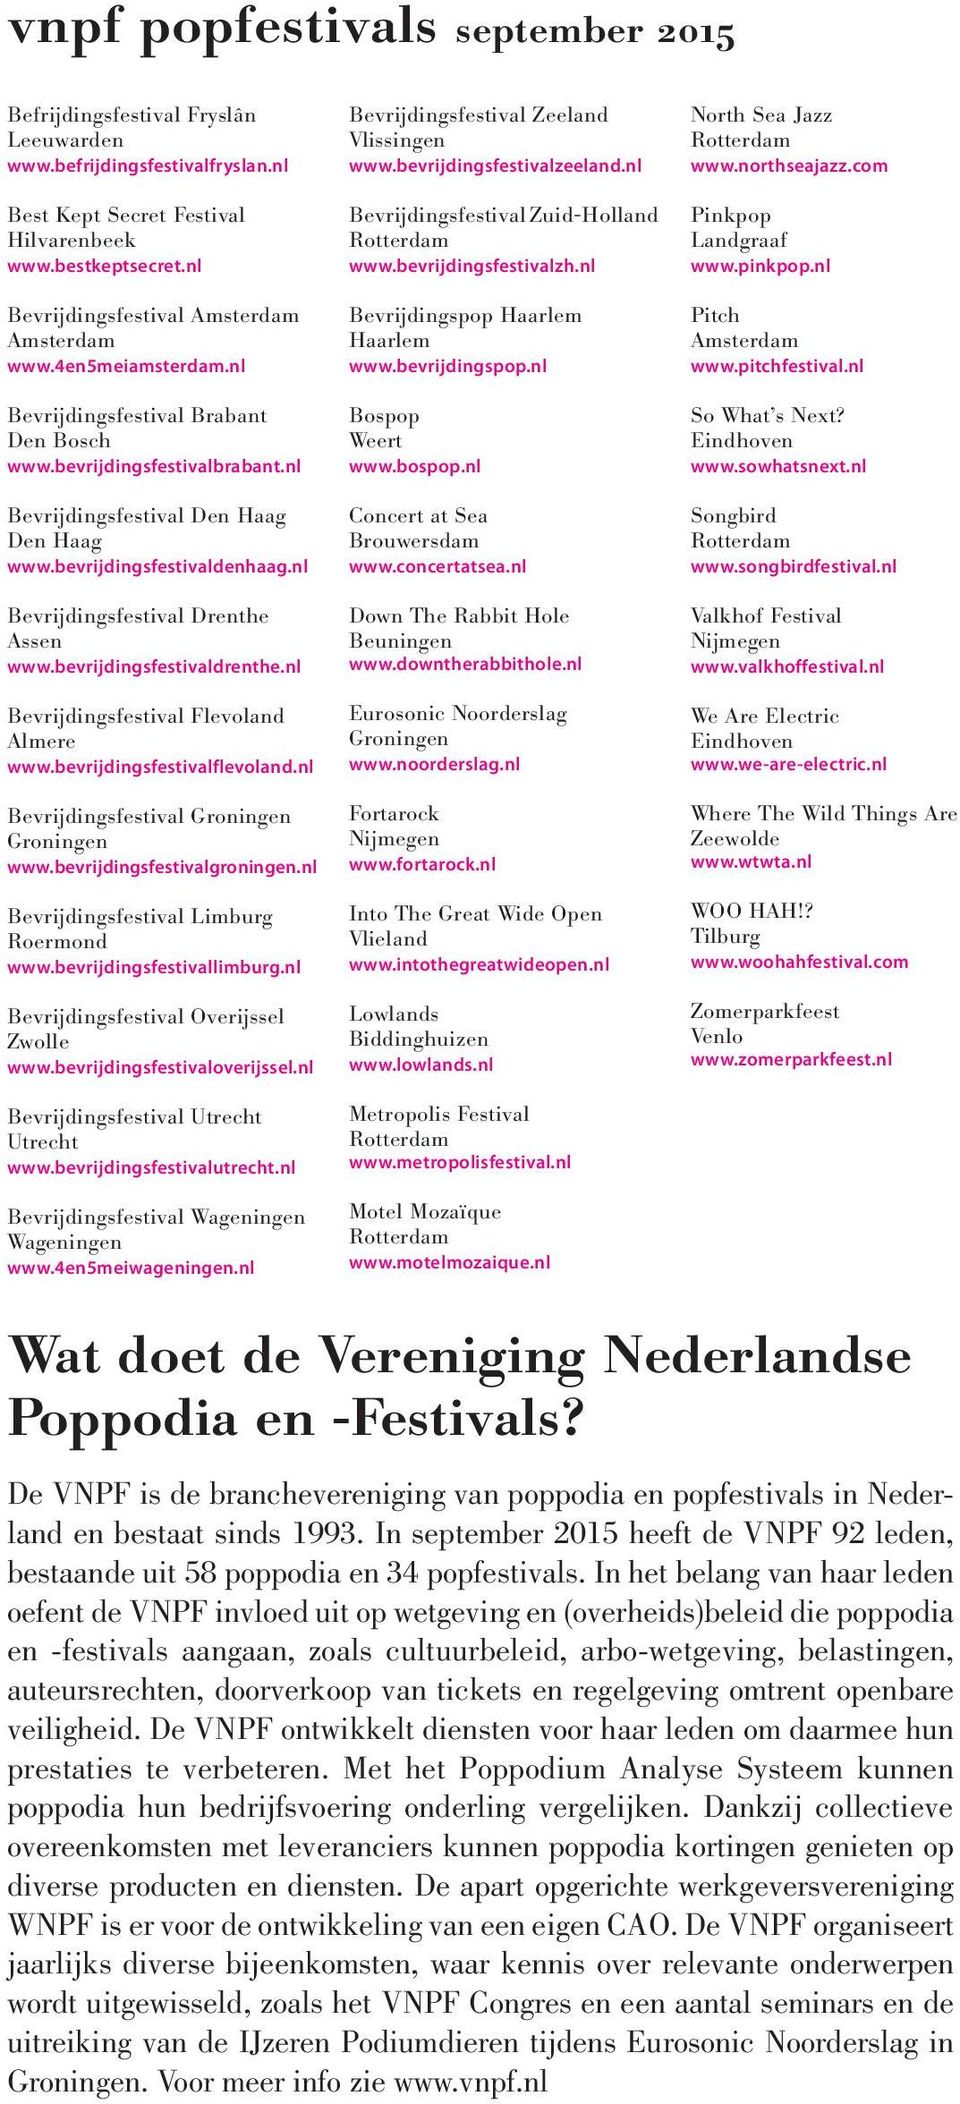 bevrijdingsfestivaldenhaag.nl Bevrijdingsfestival Drenthe Assen www.bevrijdingsfestivaldrenthe.nl Bevrijdingsfestival Flevoland Almere www.bevrijdingsfestivalflevoland.